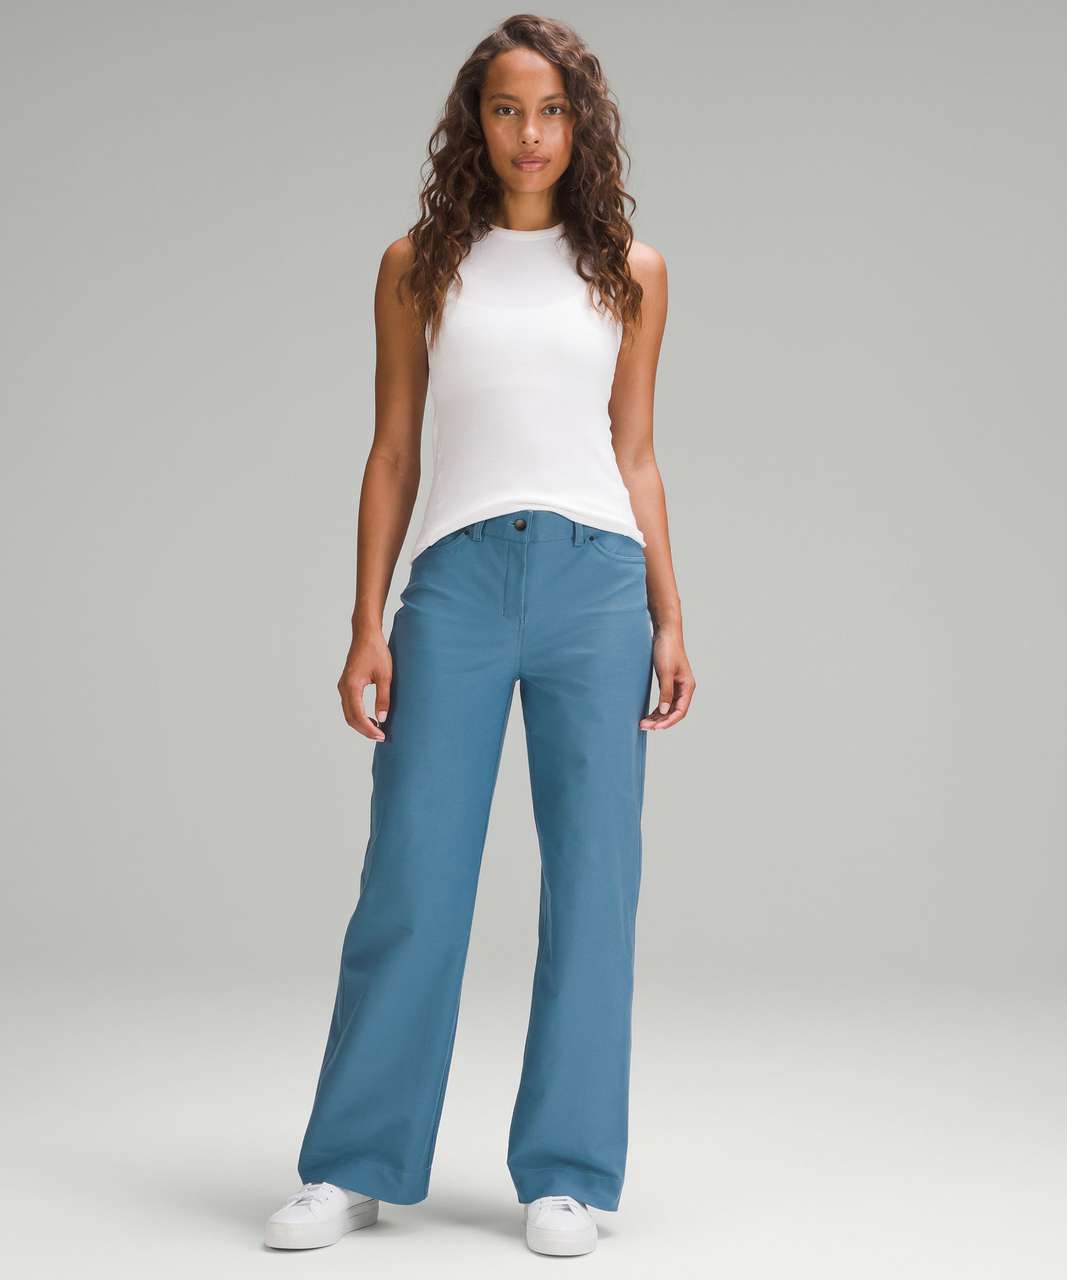 Lululemon | Women's Navy Blue City Five Pocket Pants | Size: 0